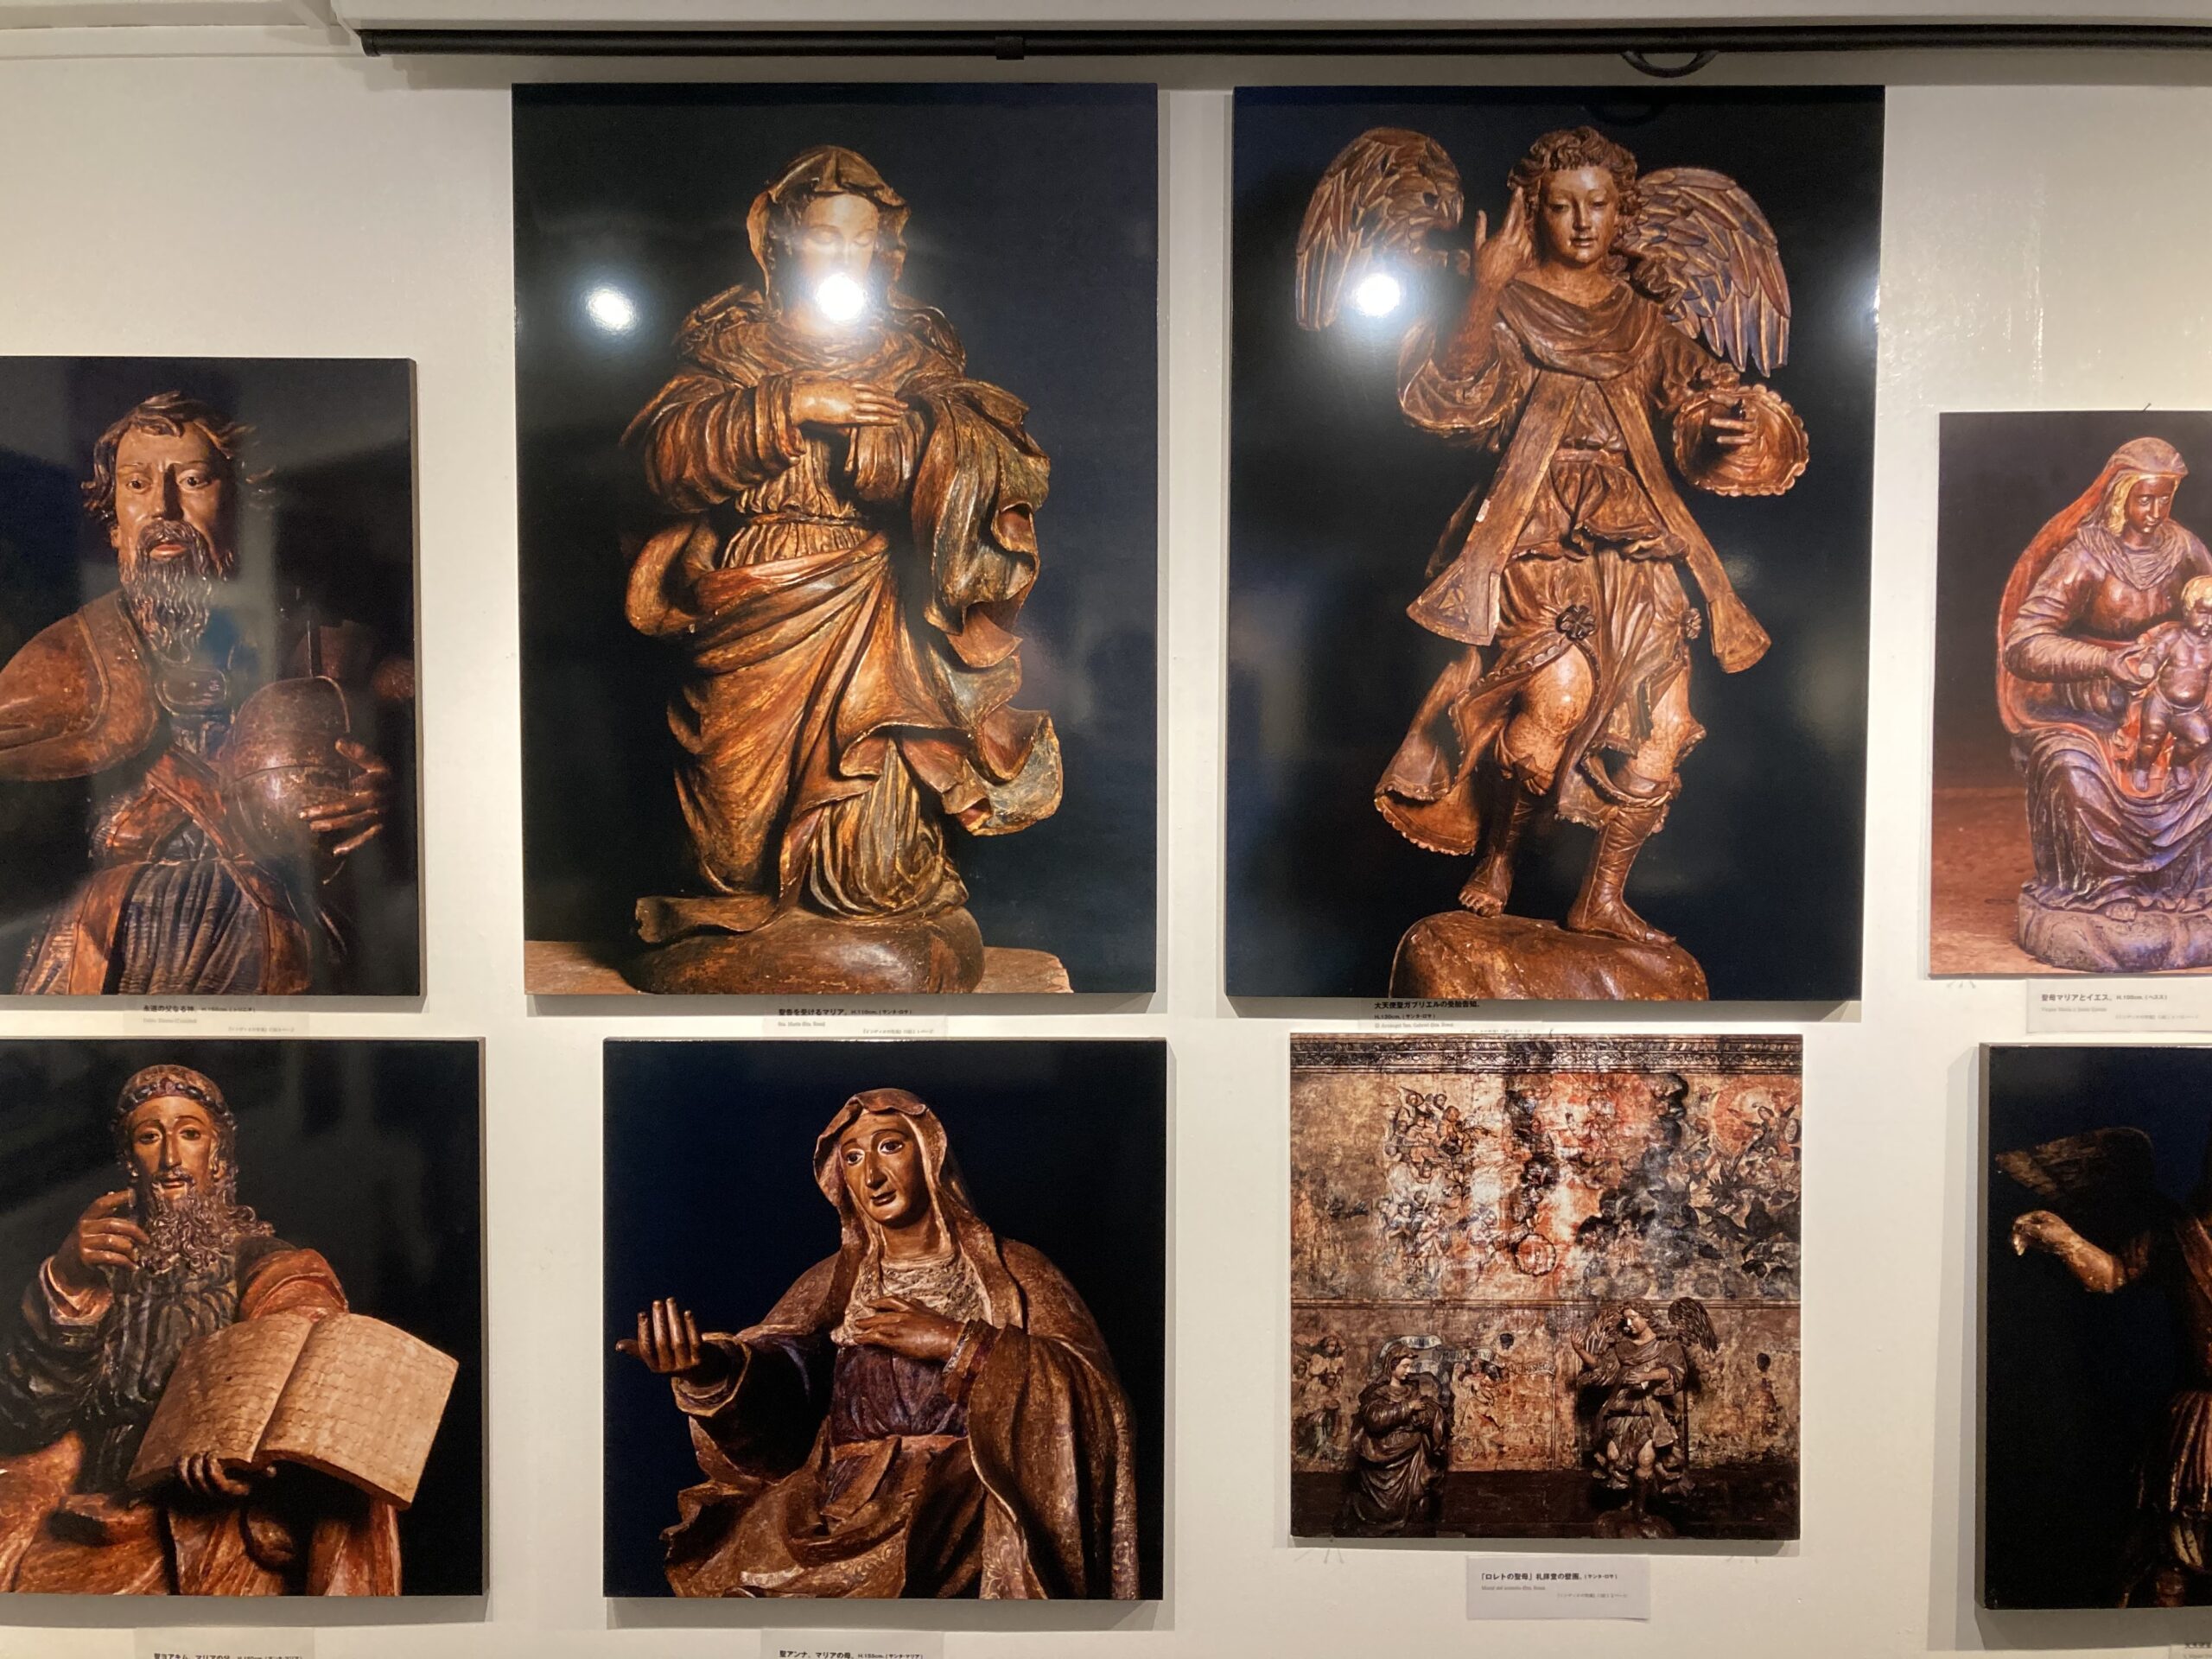 写真展の展示室に飾られたインディオの聖像のパネル写真の数々⑤